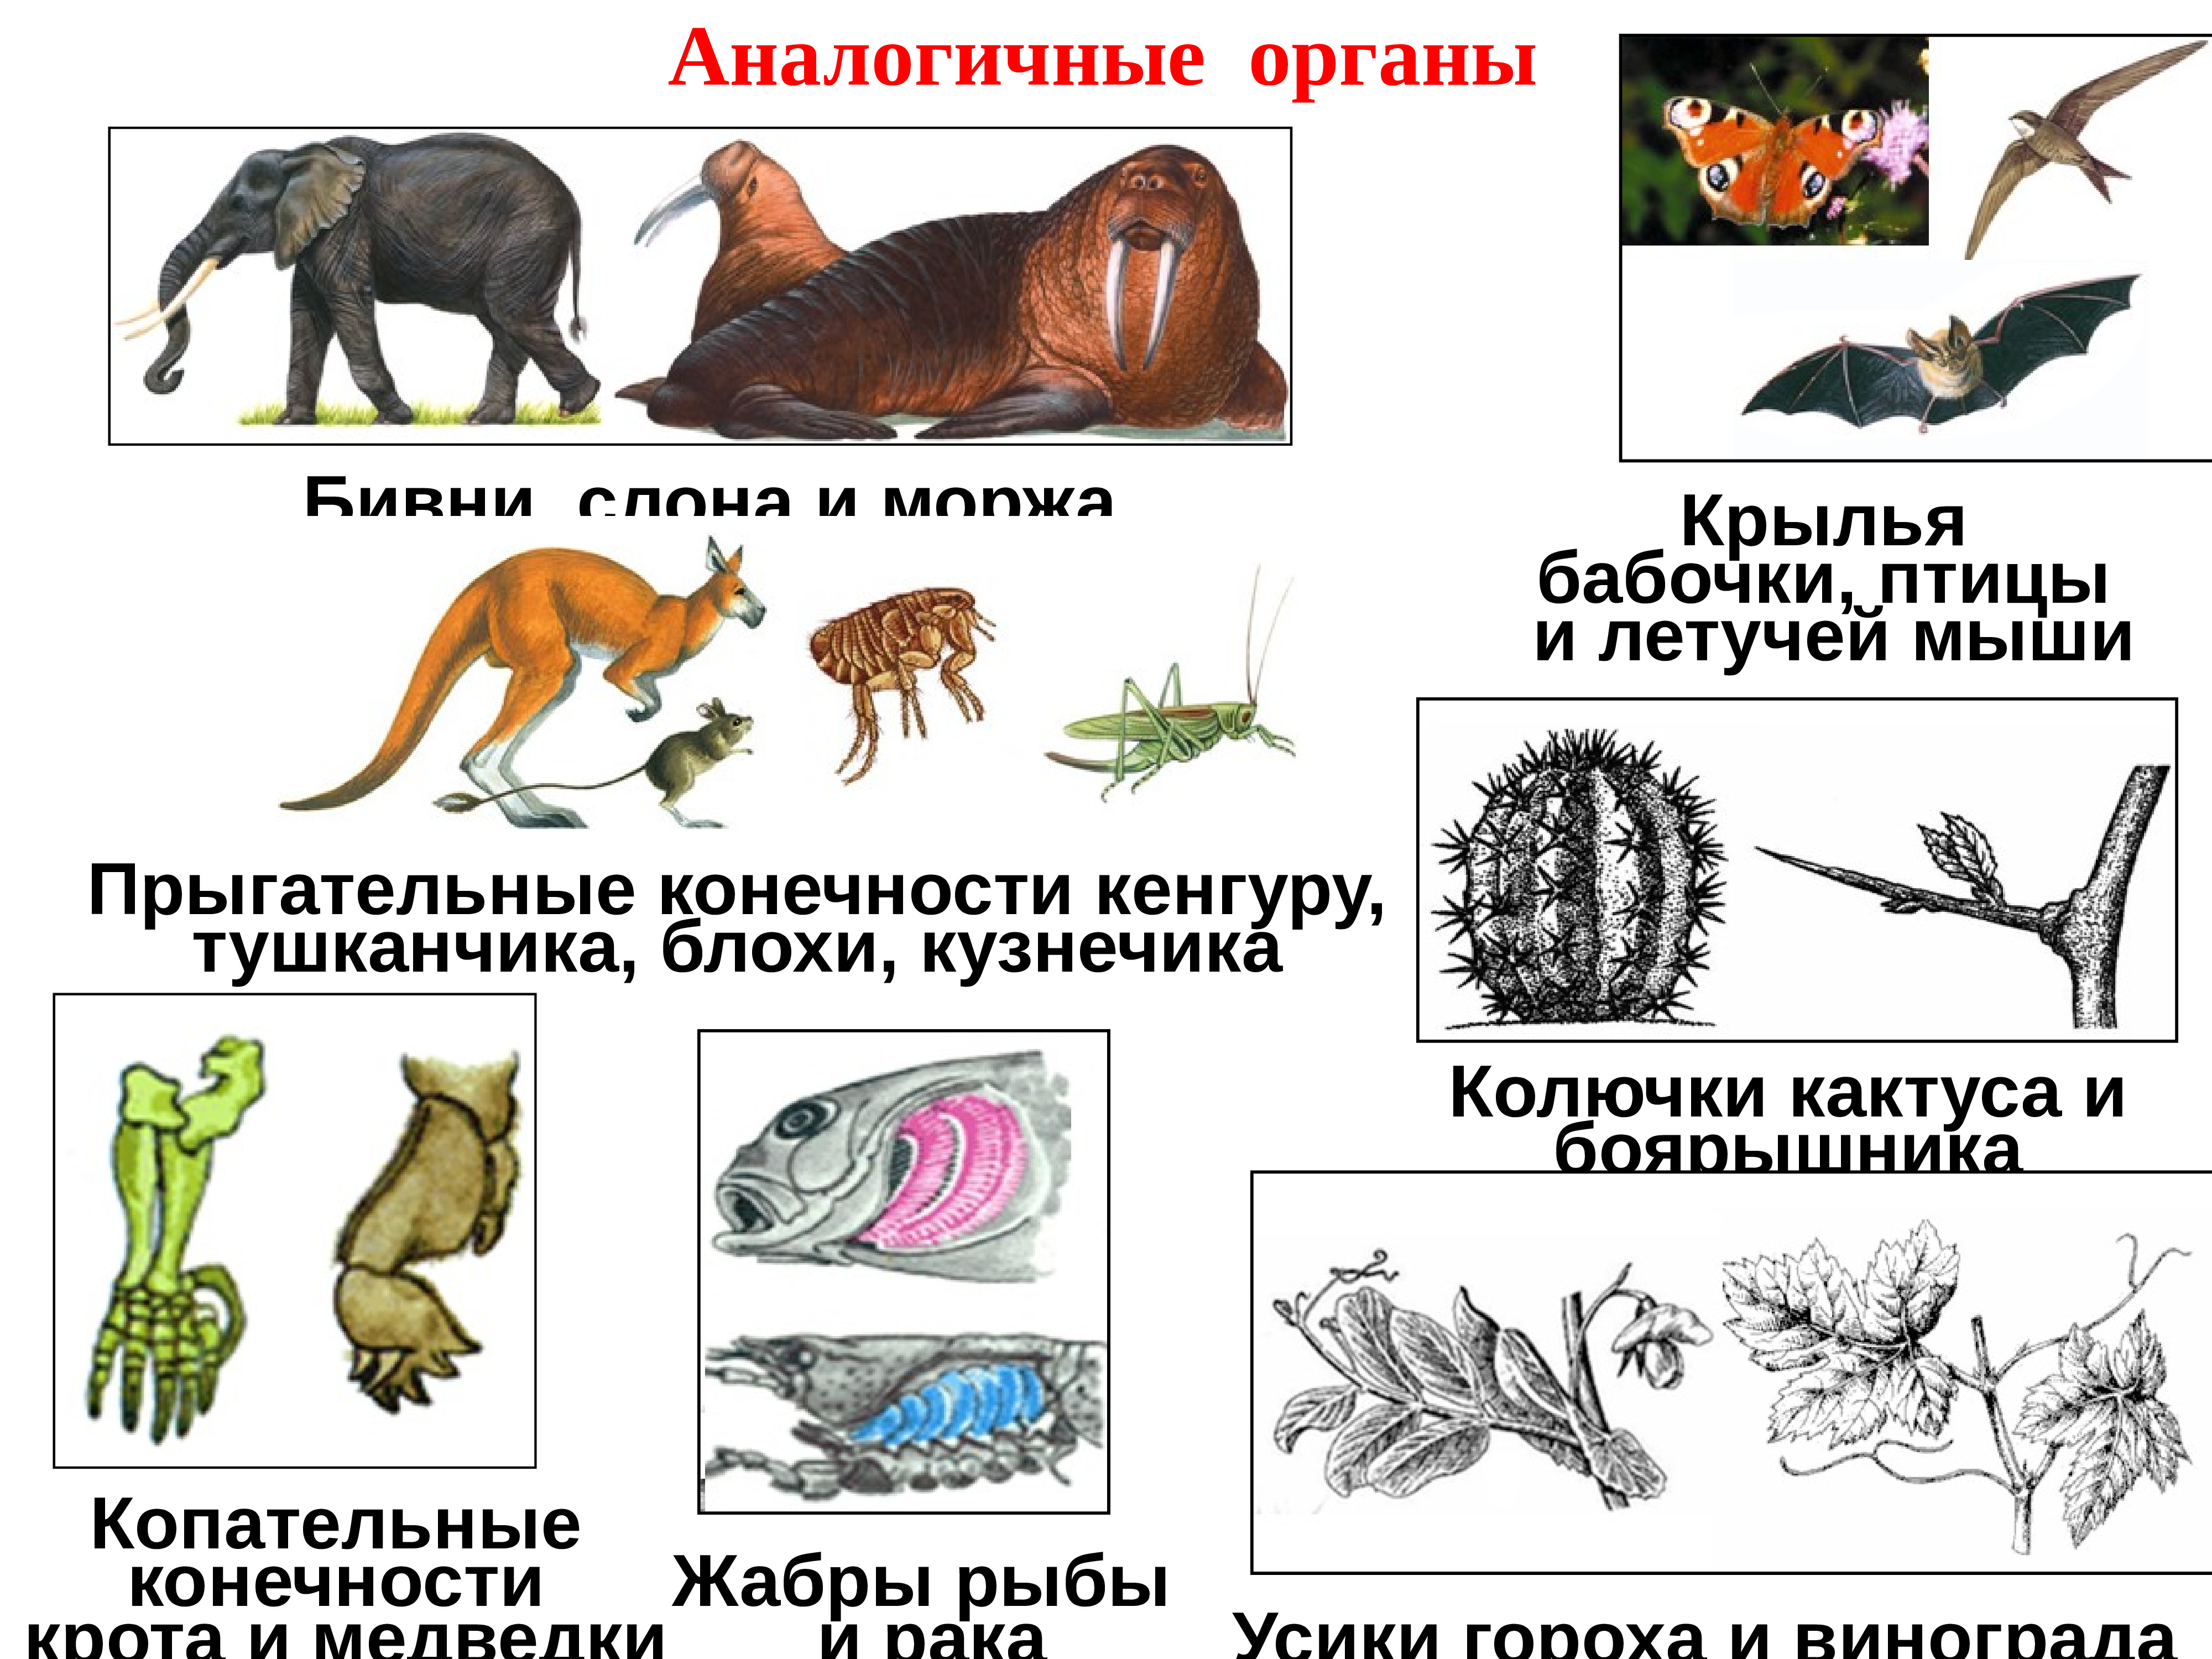 Гомологичные и аналогичные органы растений и животных